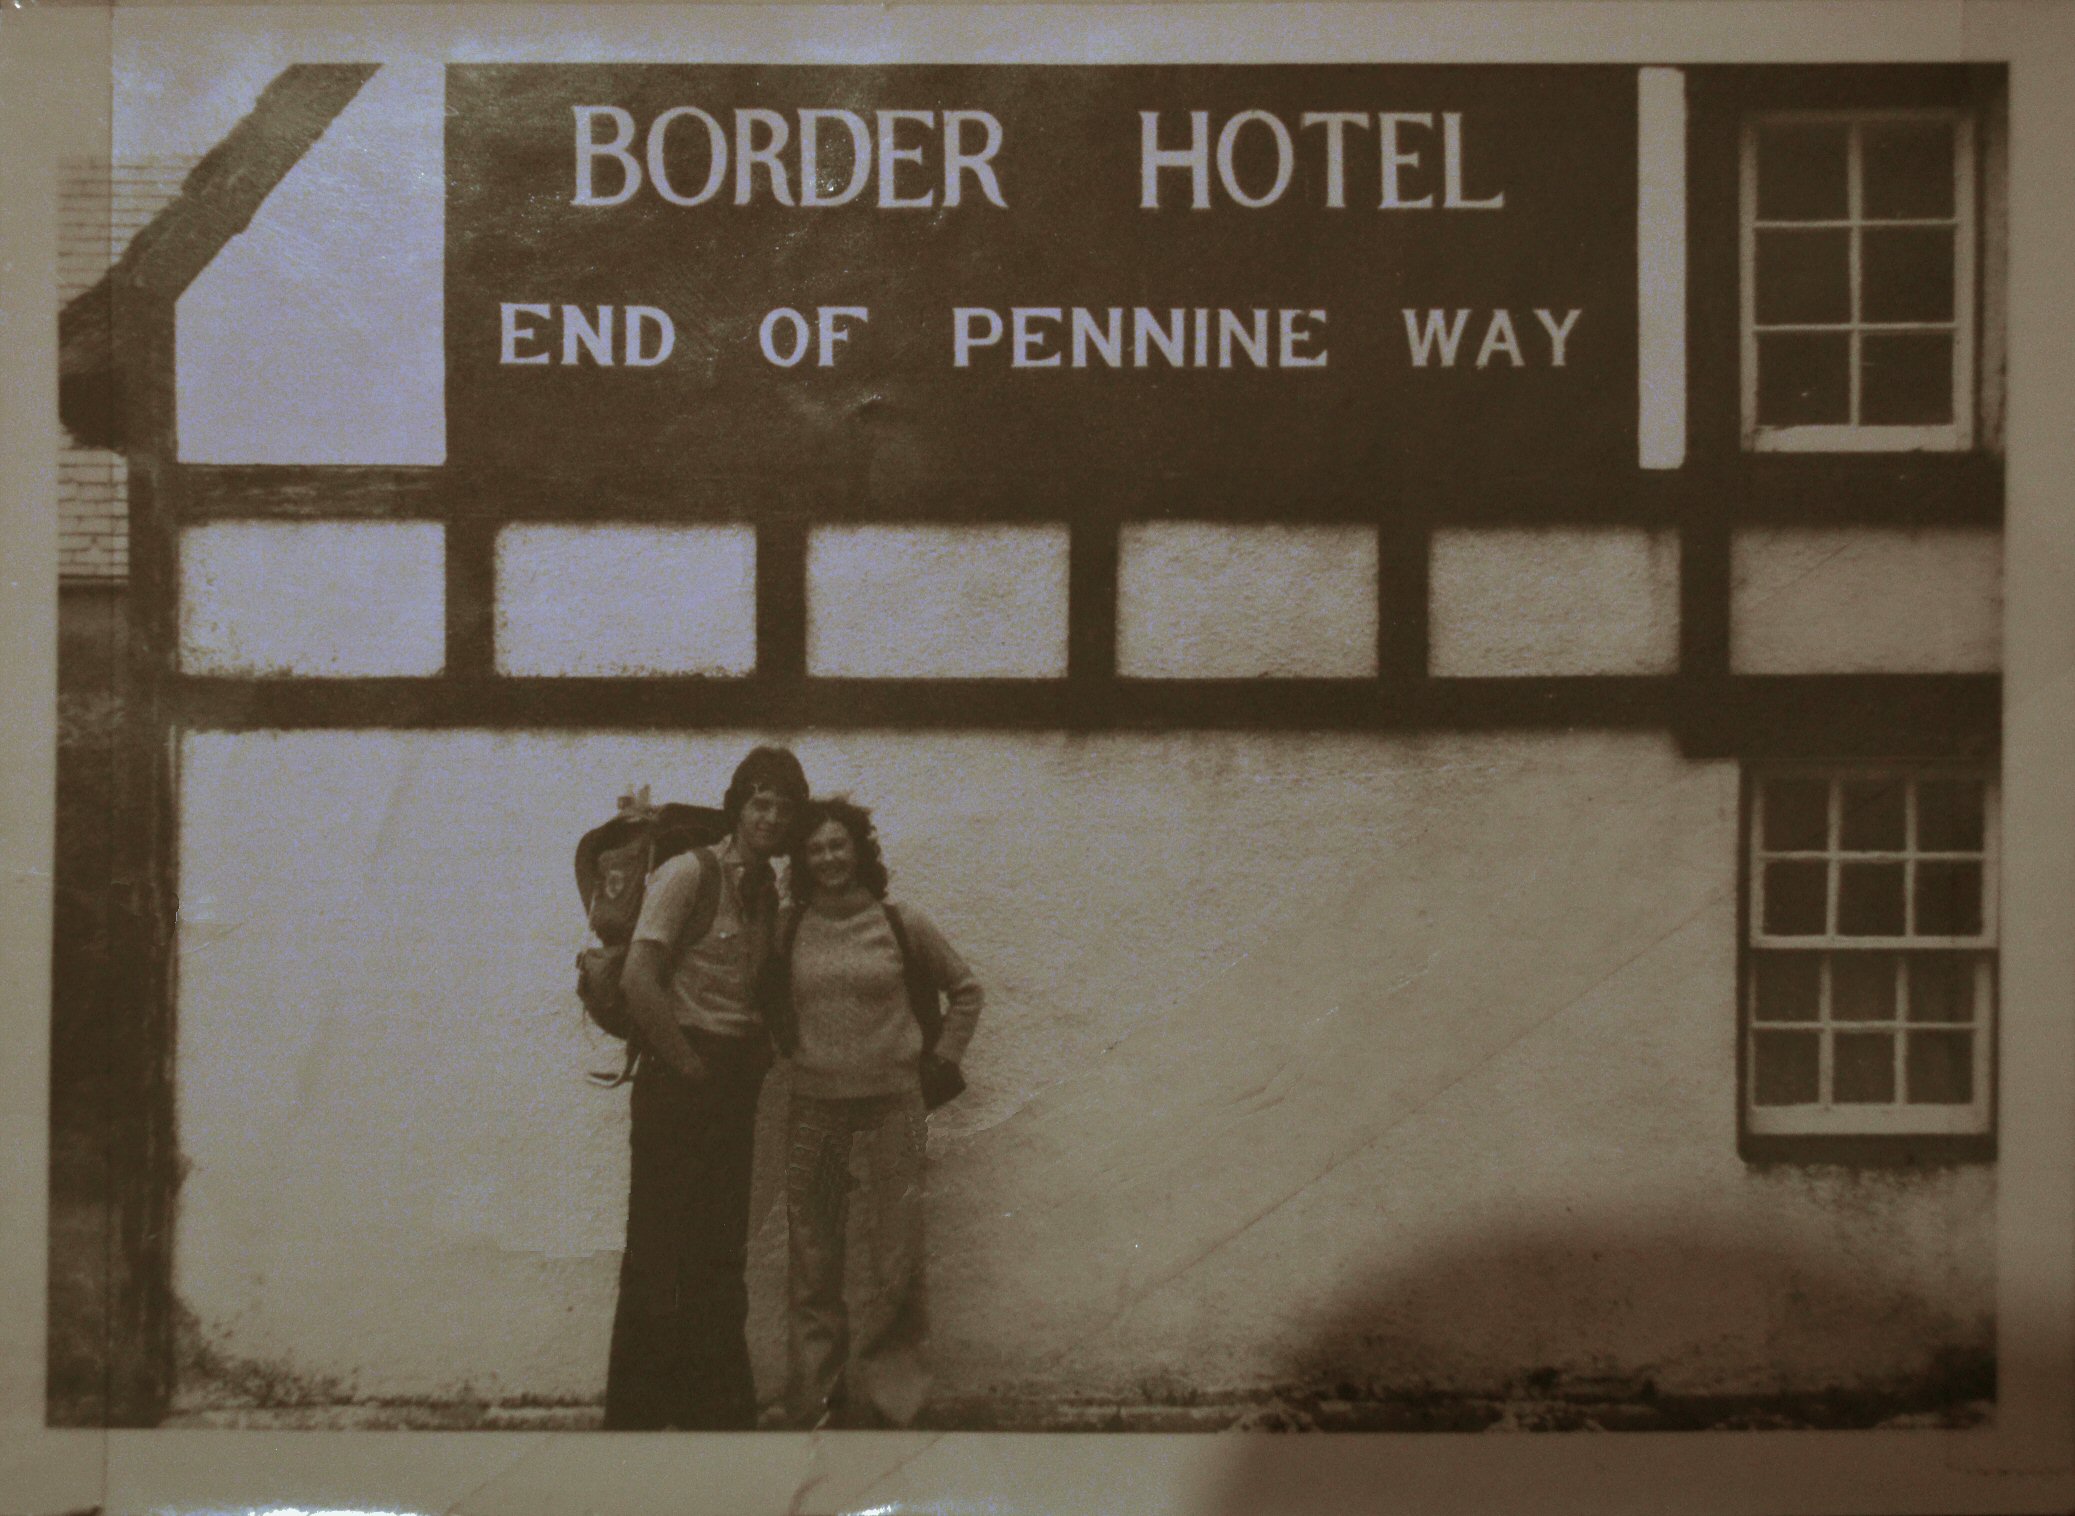 Pennine Way 1977